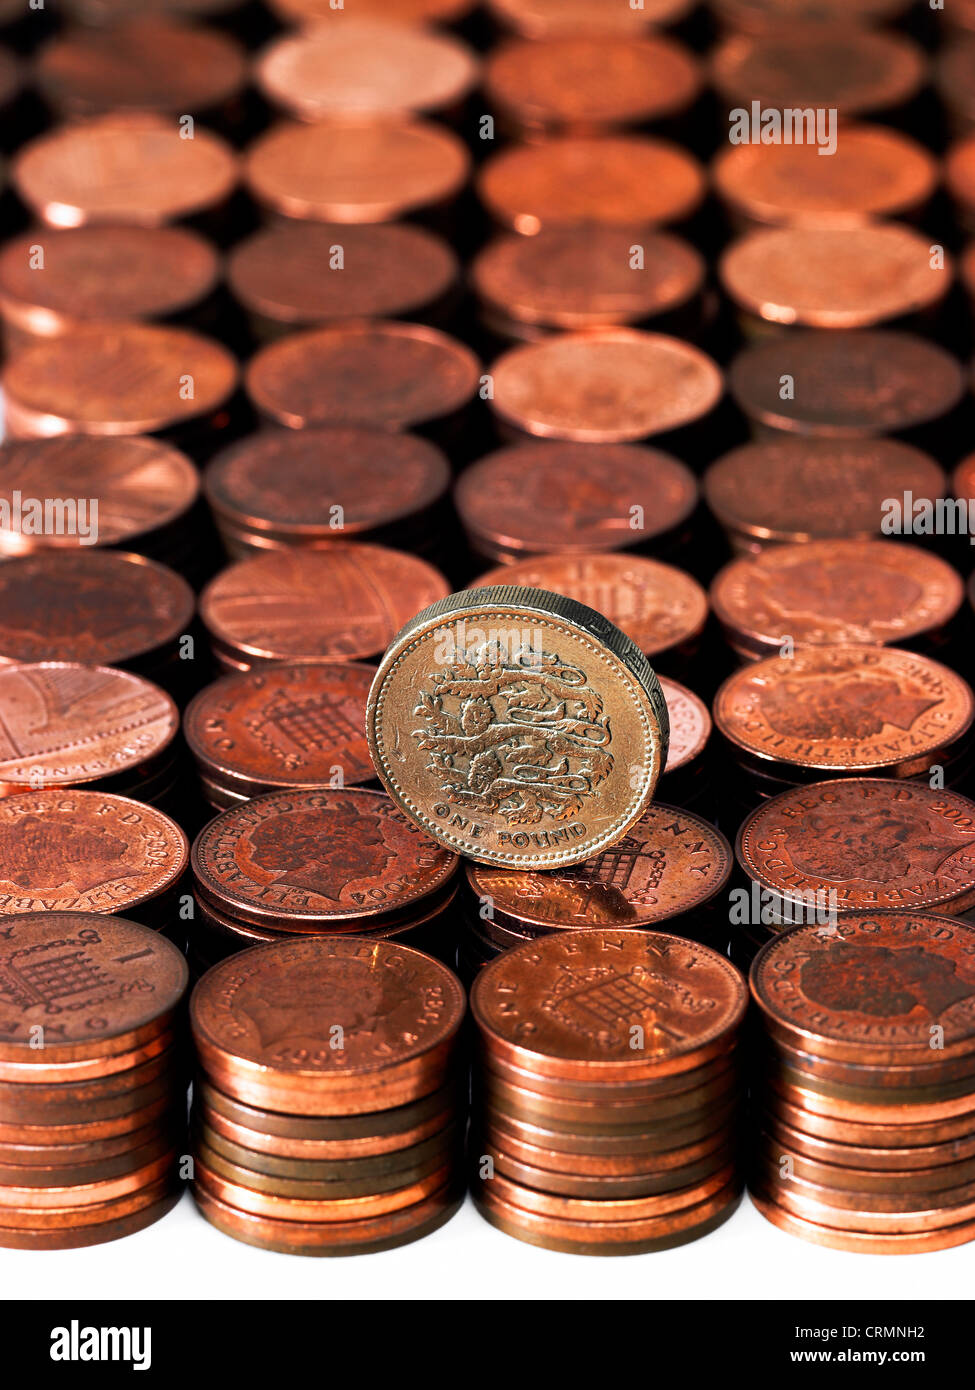 Prolijas pilas de British centavos con una sola moneda libra Foto de stock